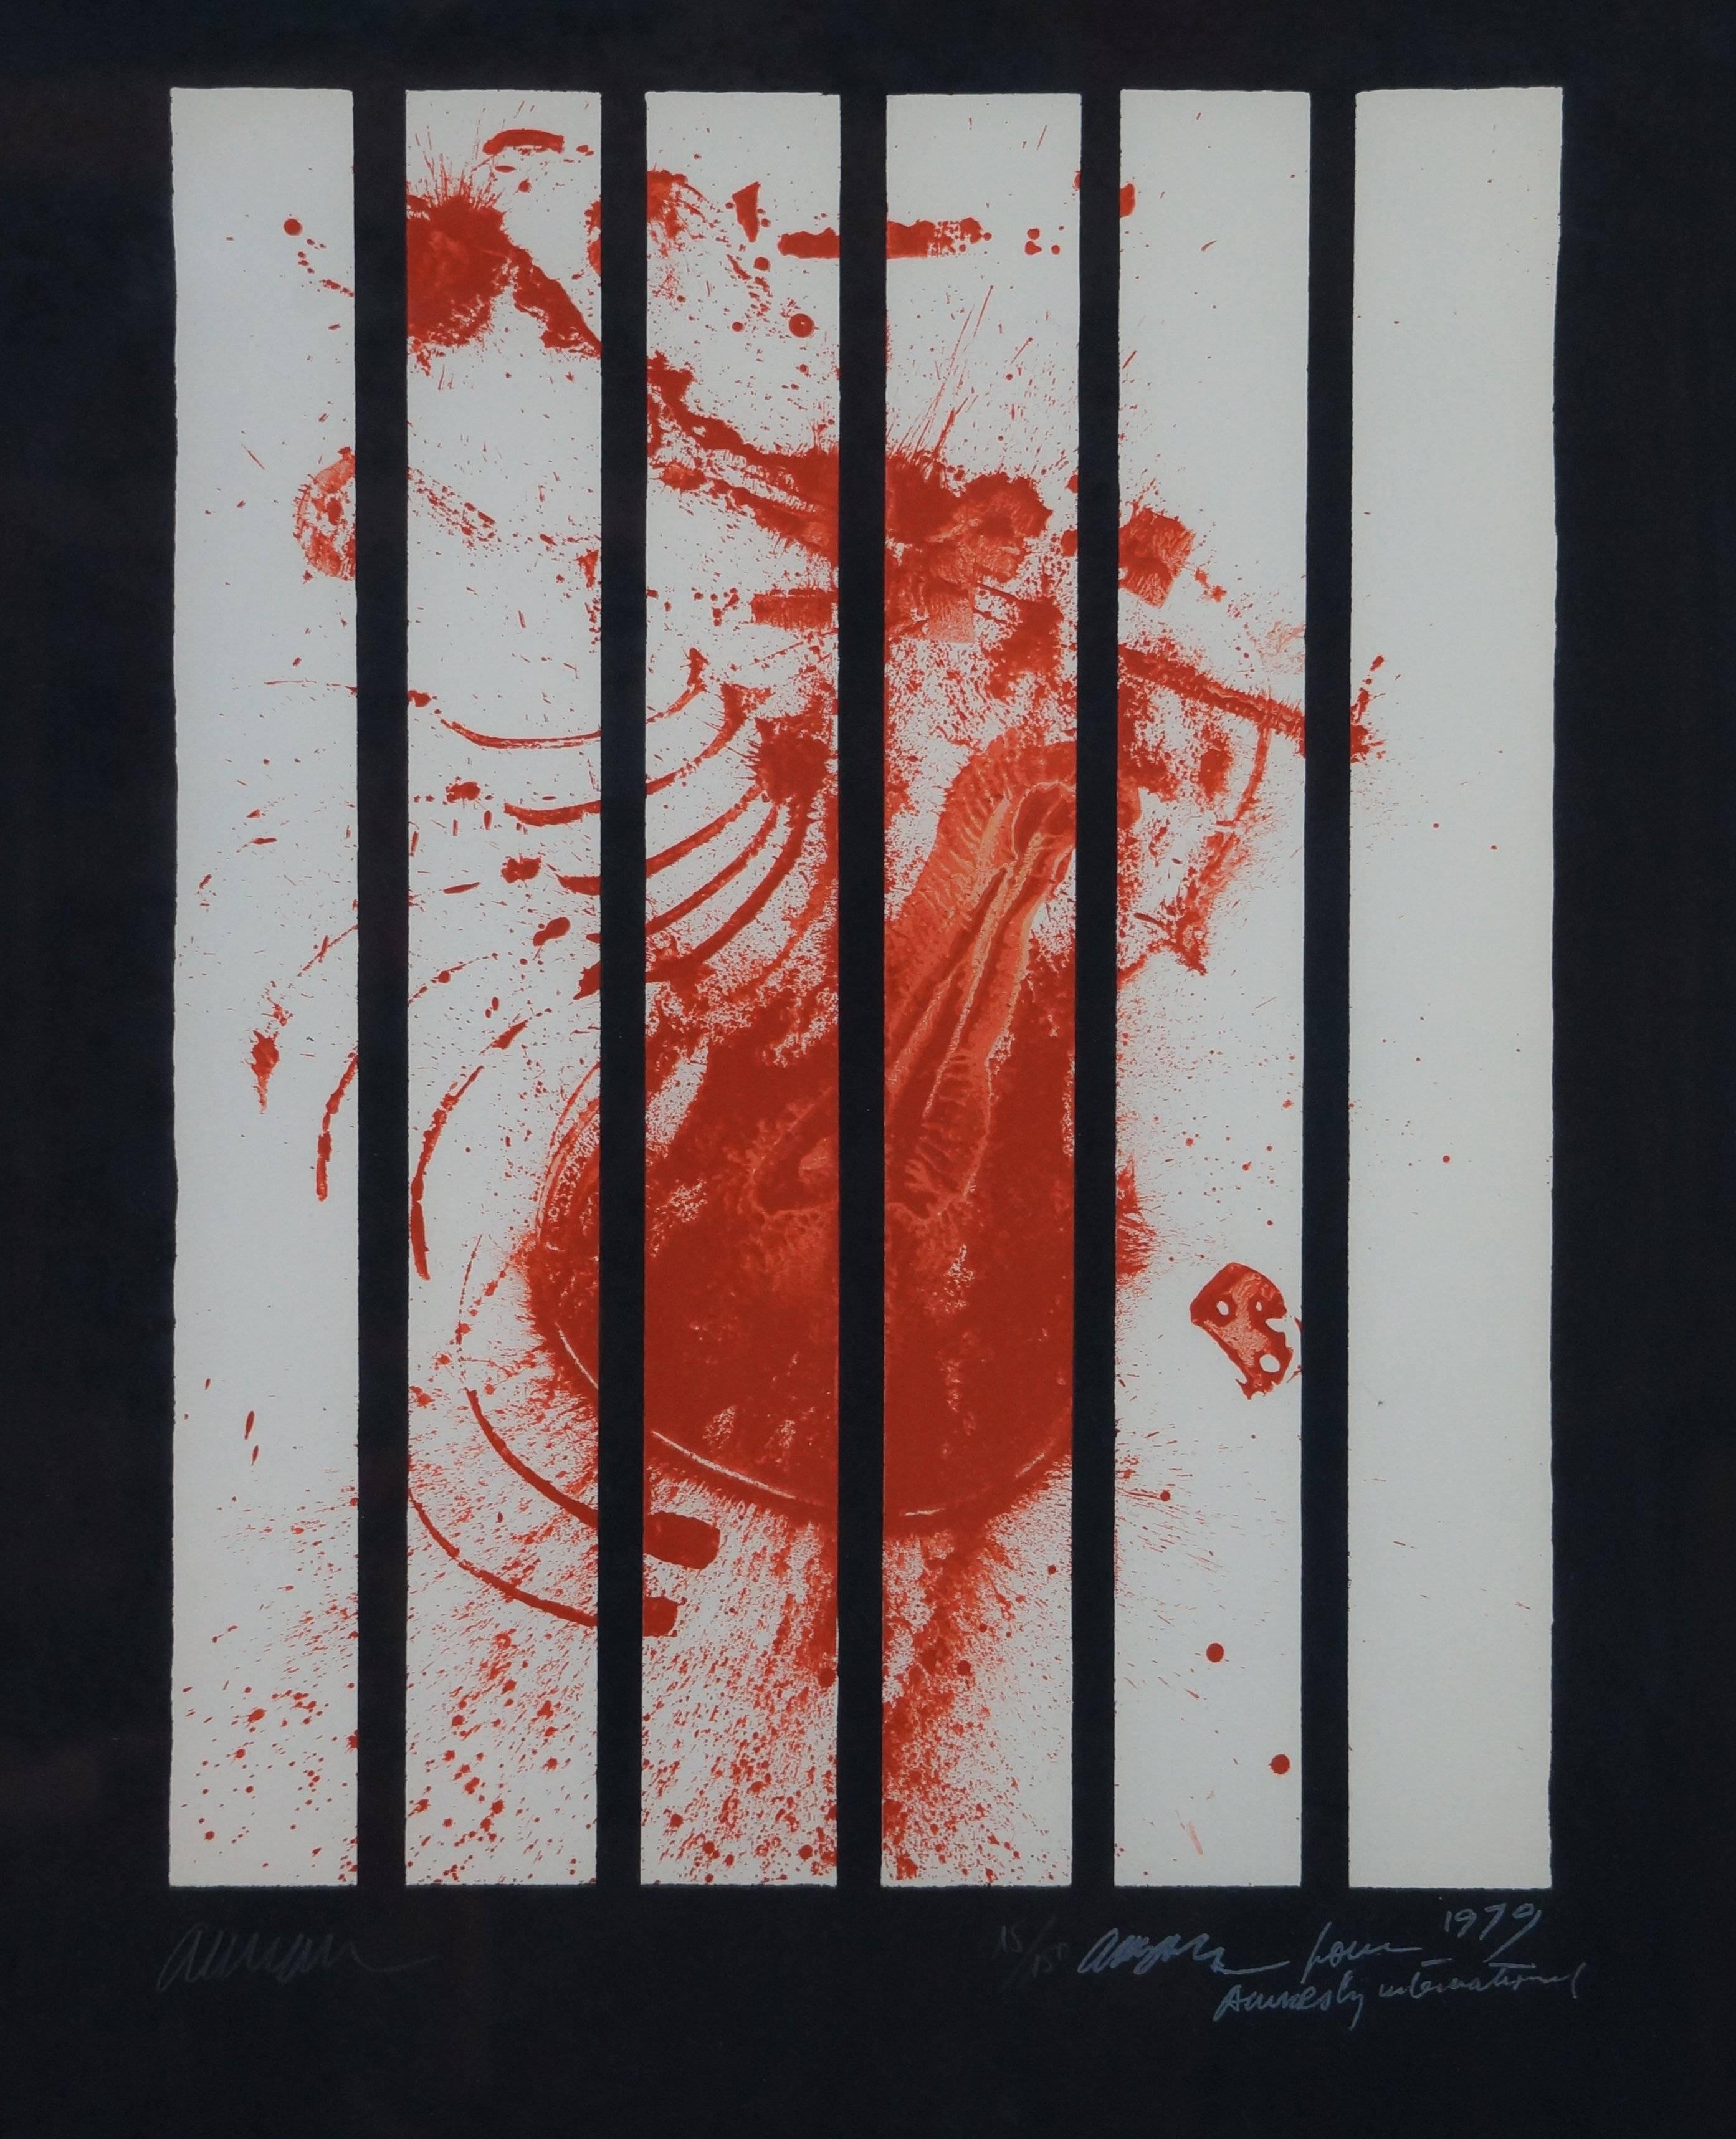 Composition abstraite AI, 1979, litographe, 86x66 cm, encadrée - Print de Arman